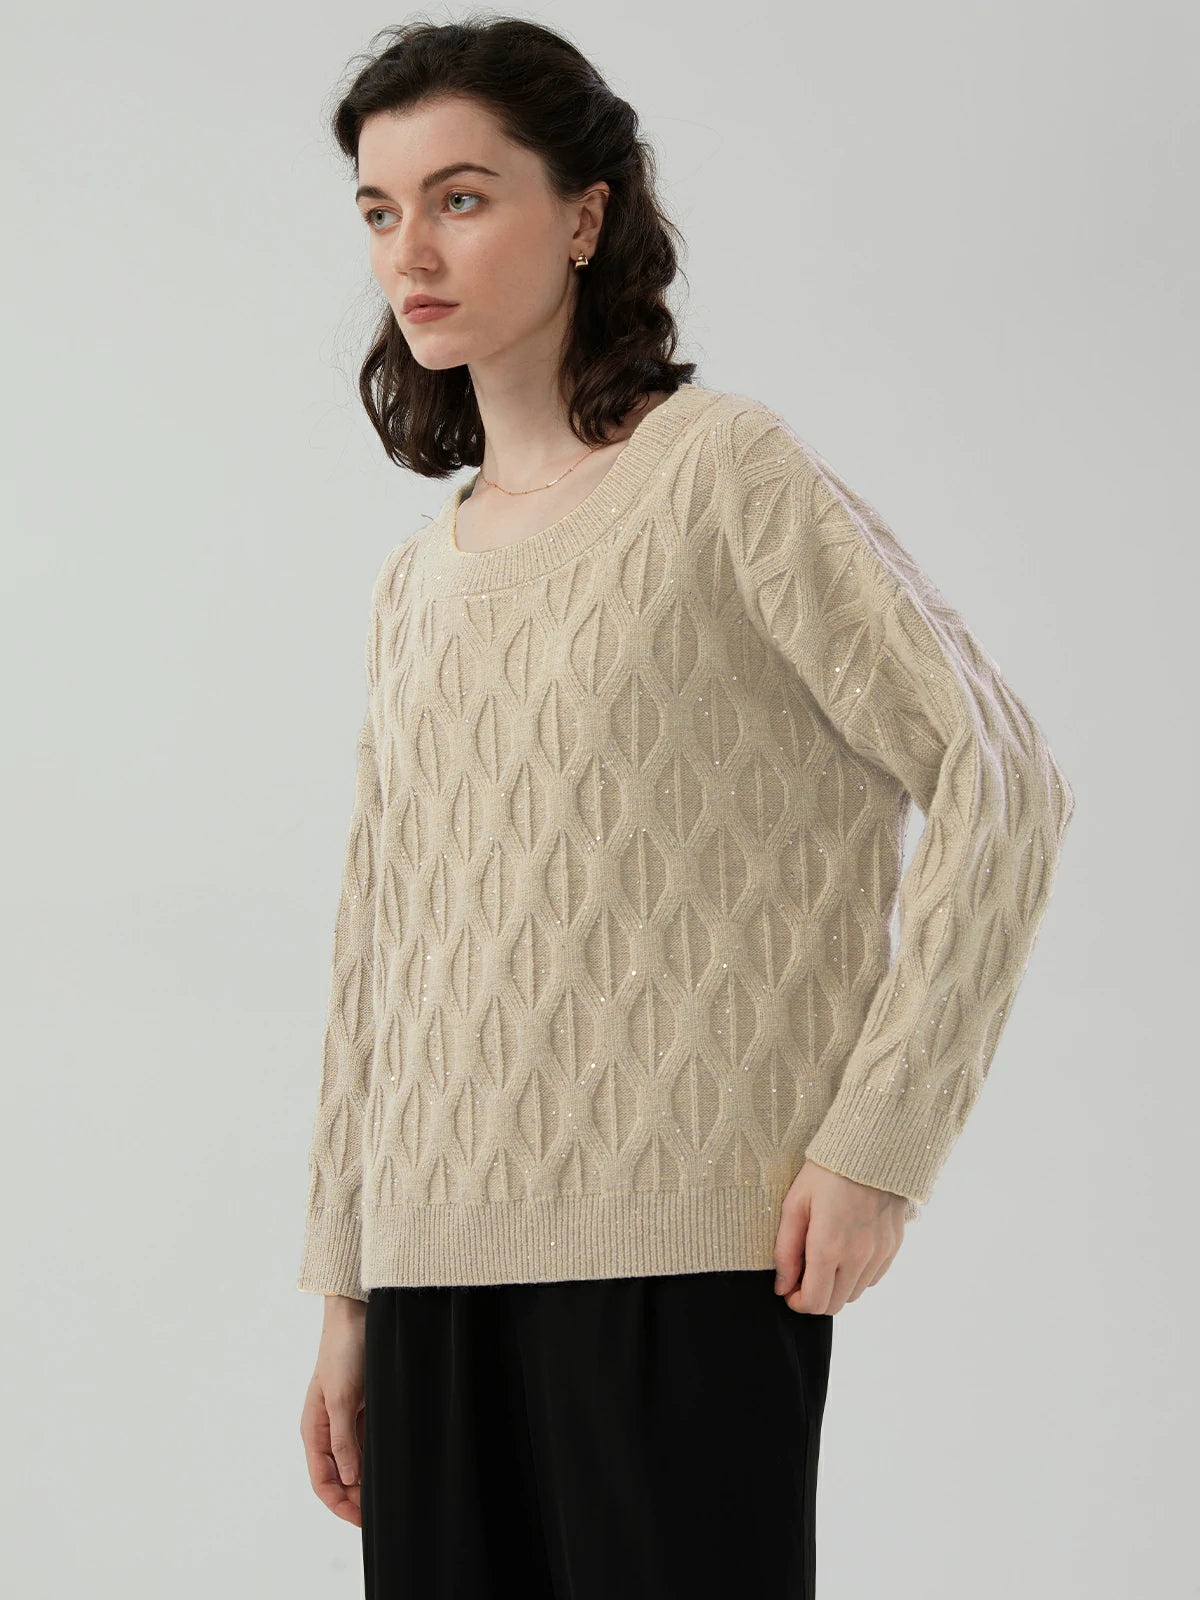 Beige Textured sequin round-neck sweaters in winter fashion